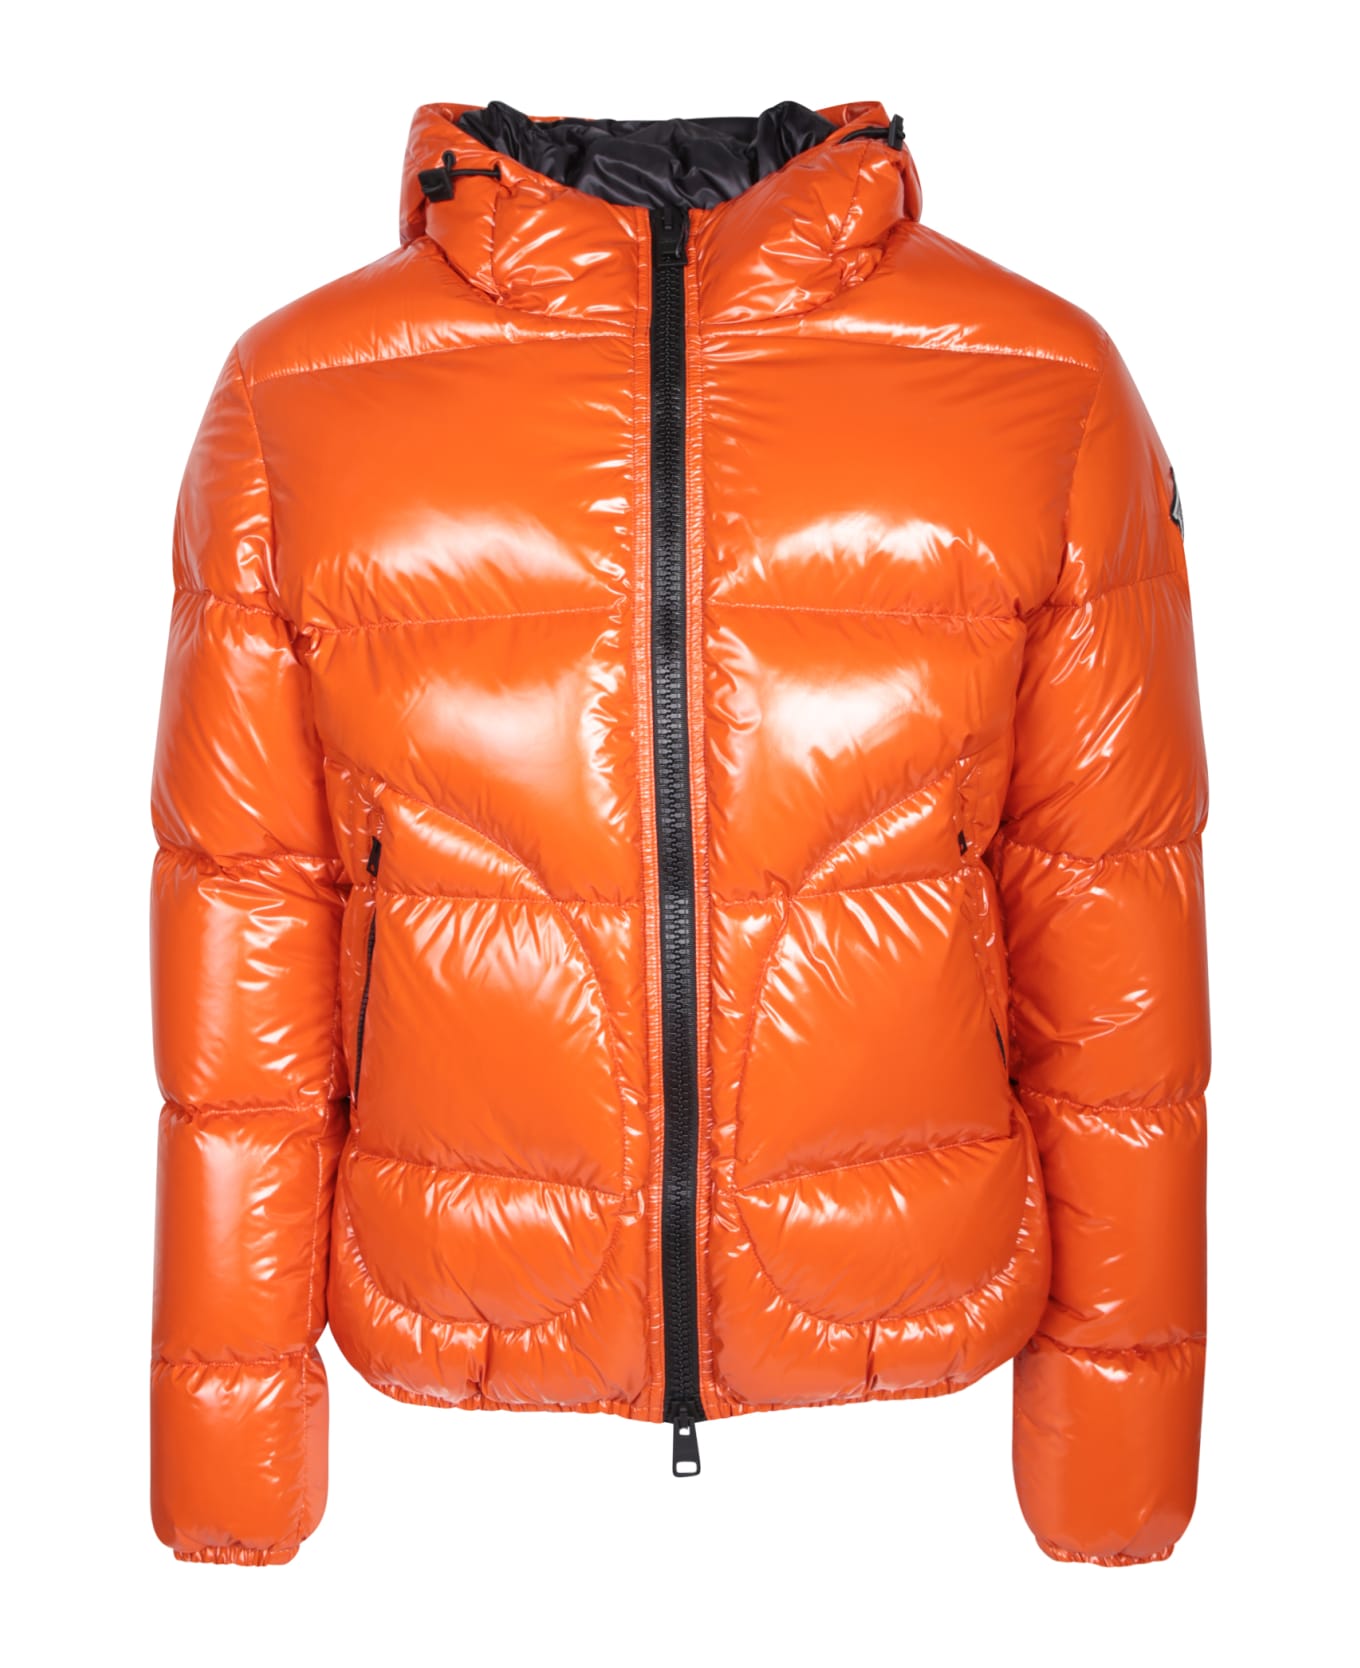 Herno Orange Gloss Bomber Jacket - Orange